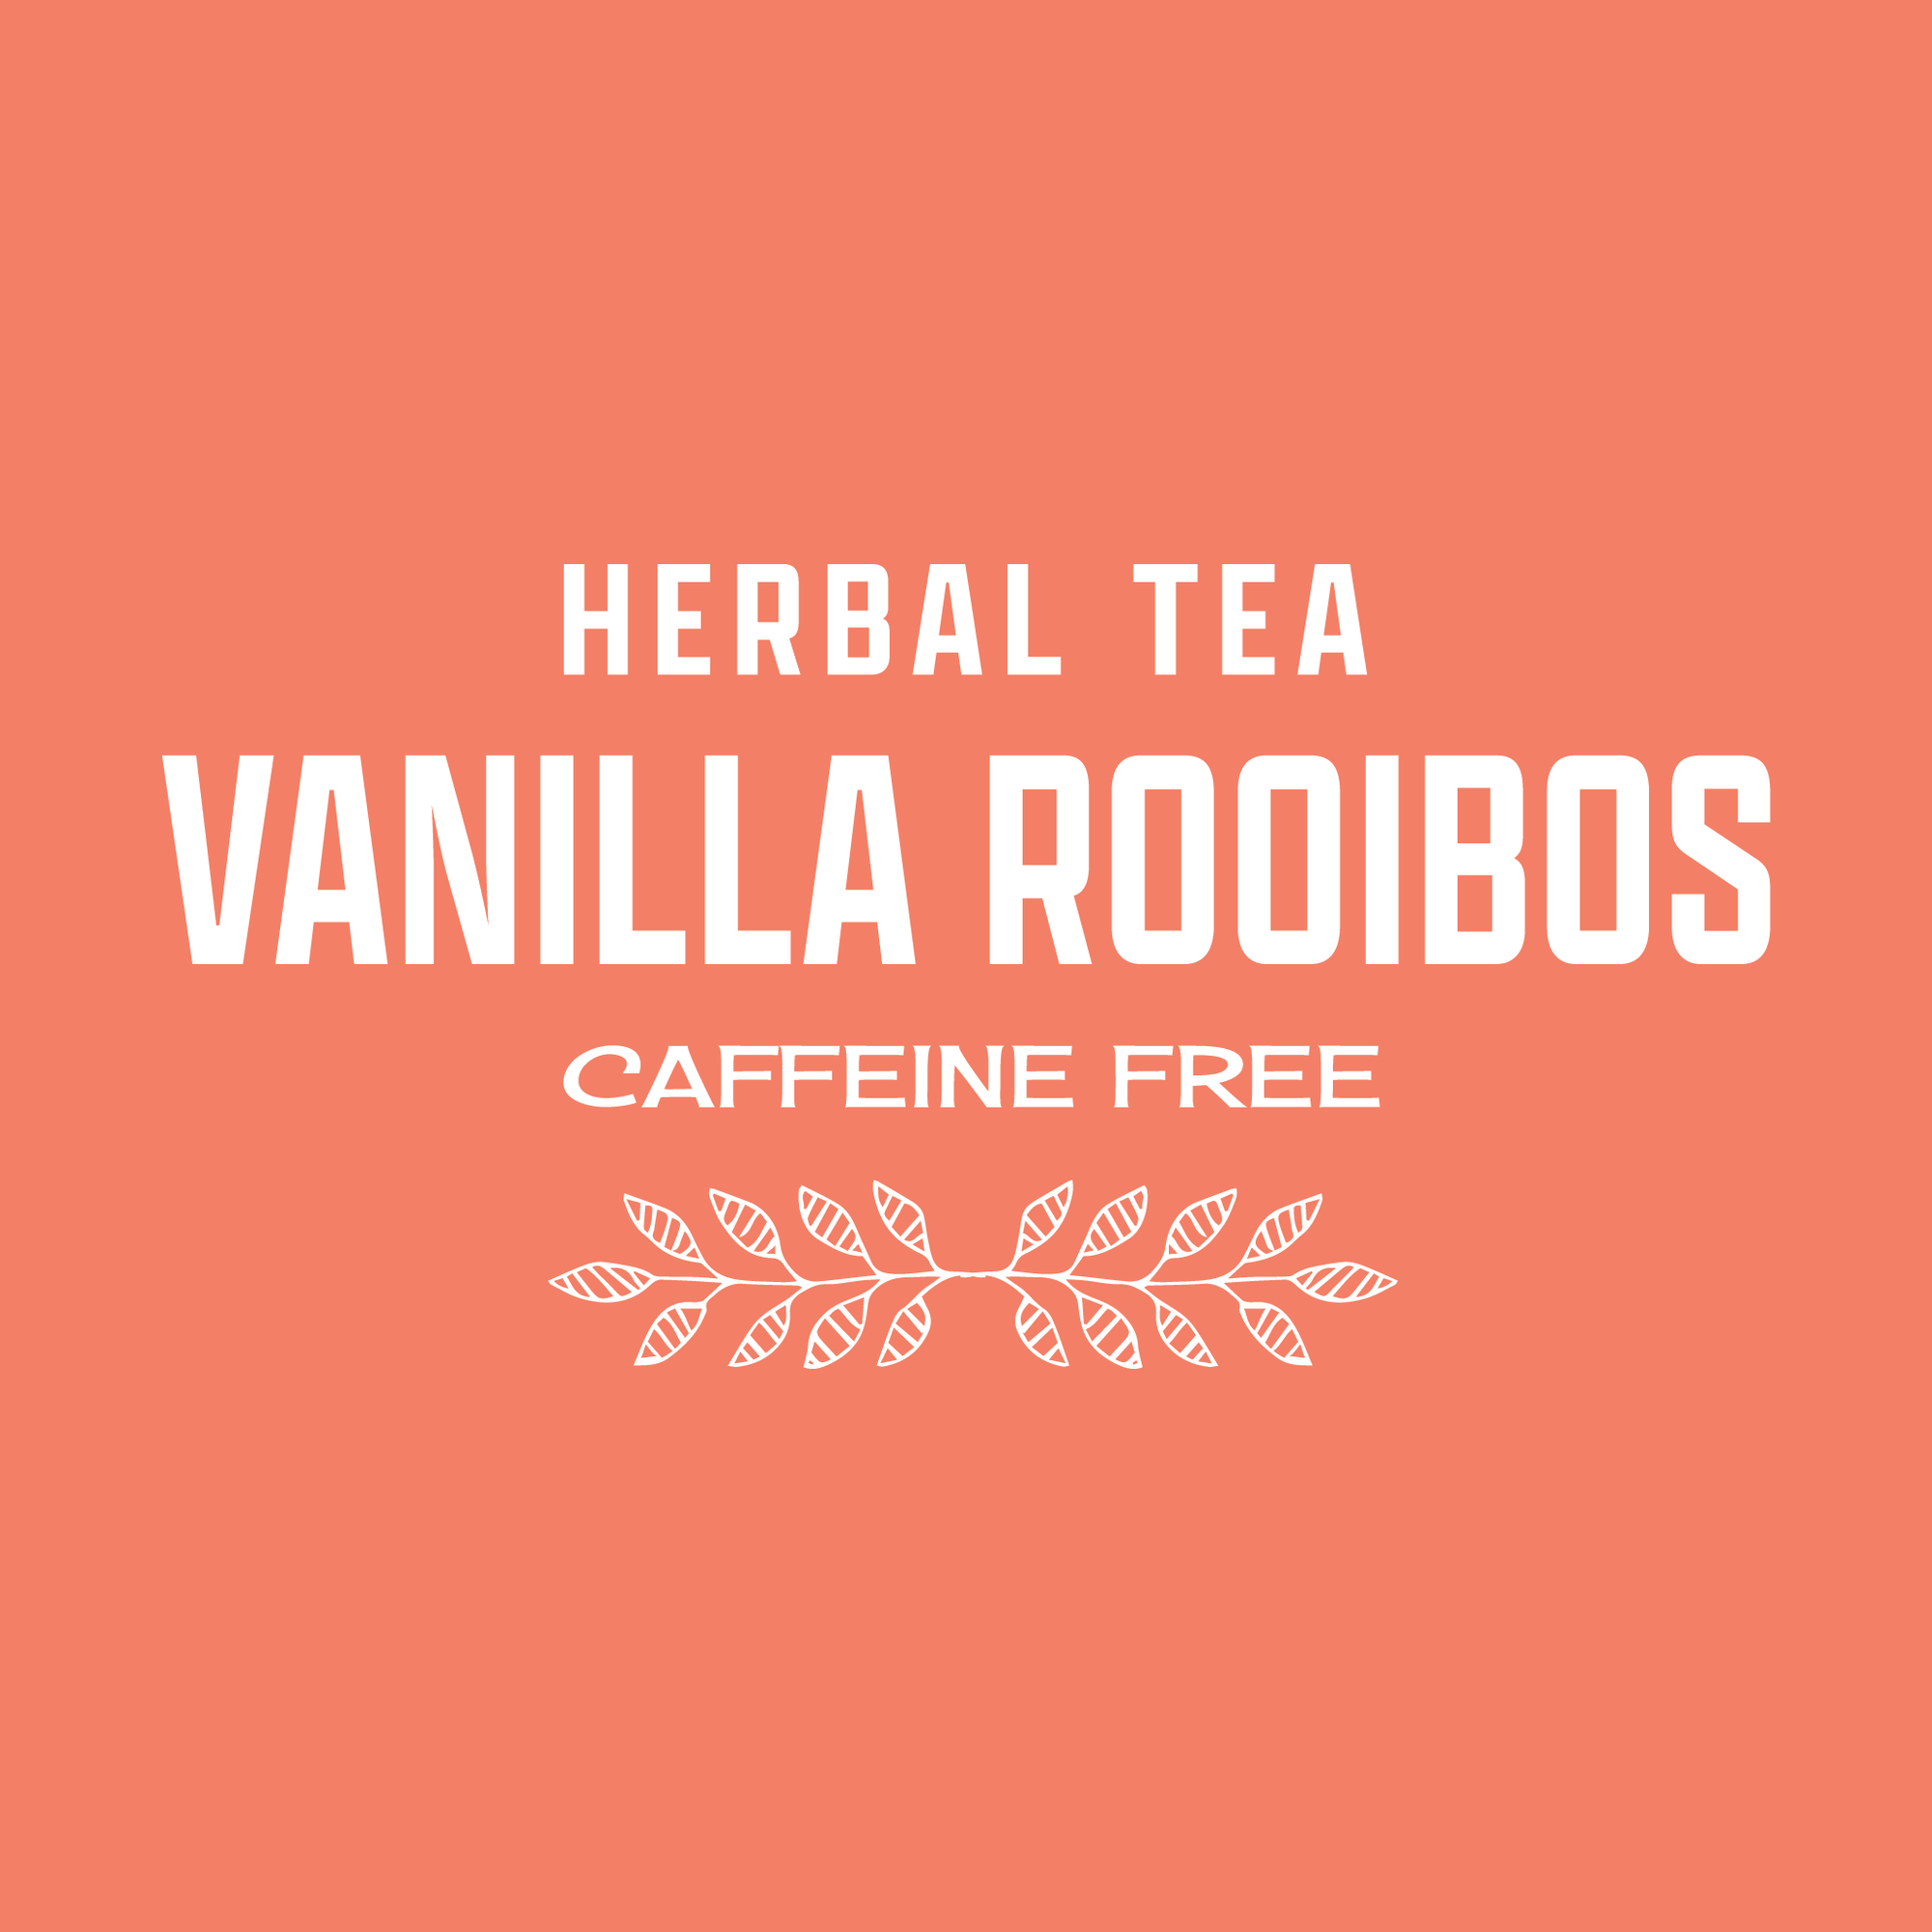 Vanilla Rooibos Tea